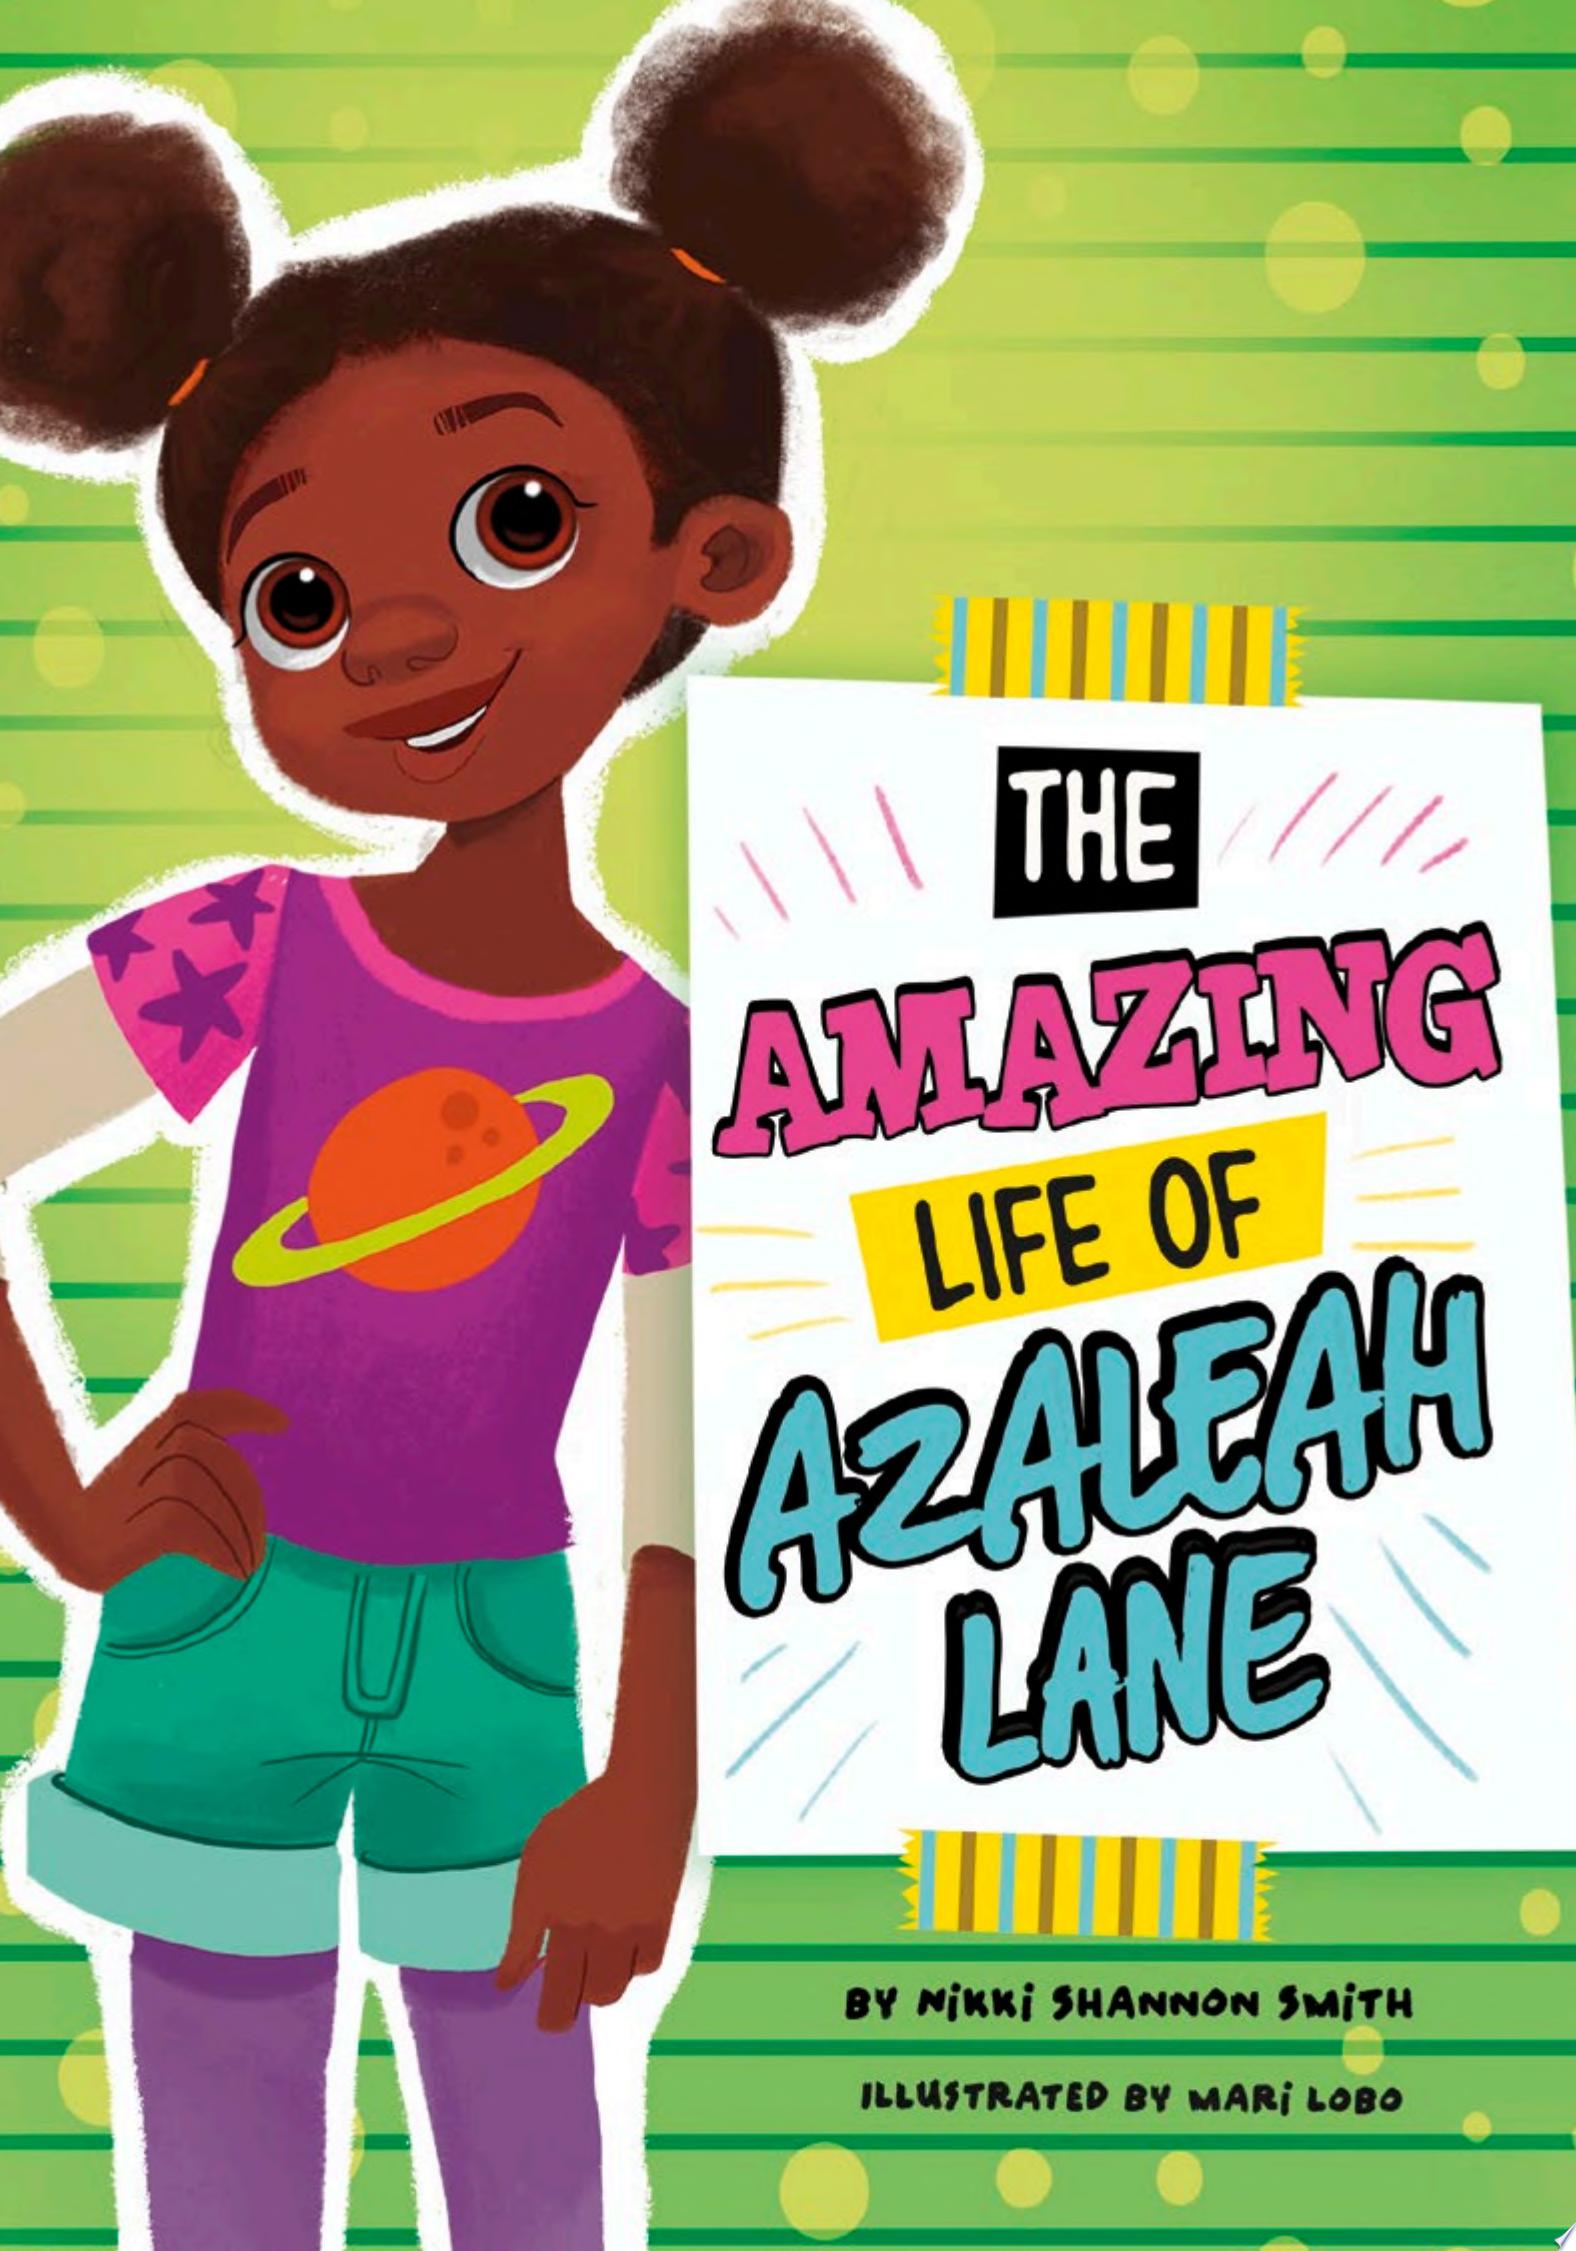 Image for "The Amazing Life of Azaleah Lane"